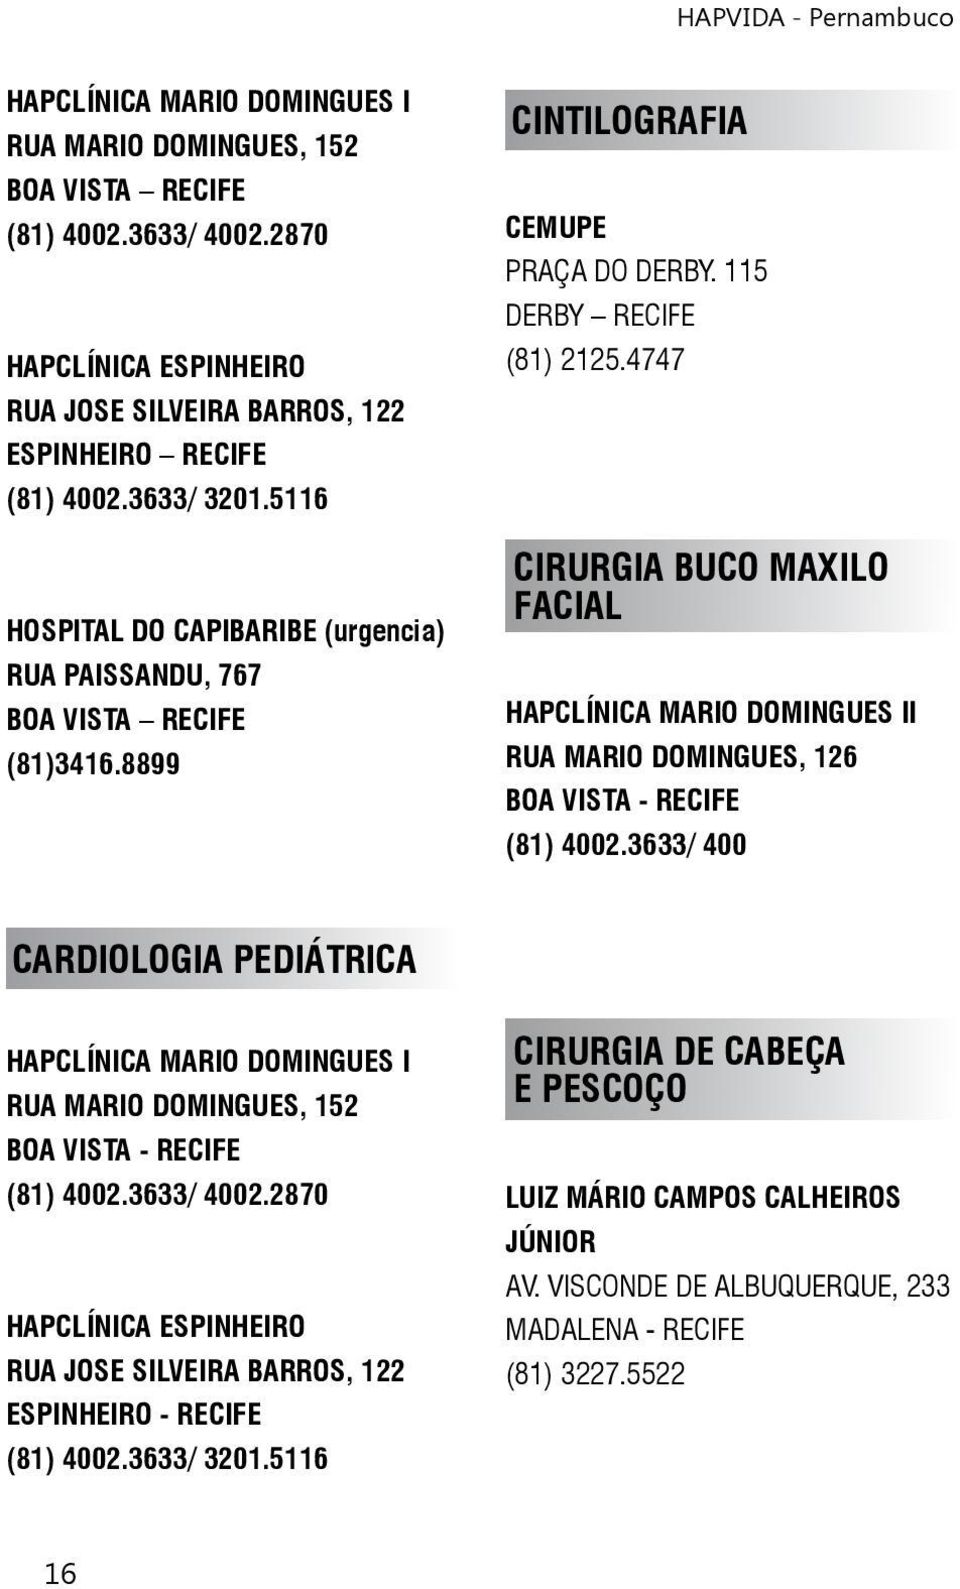 4747 CIRURGIA BUCO MAXILO FACIAL HAPCLÍNICA MARIO DOMINGUES II RUA MARIO DOMINGUES, 126 BOA VISTA - RECIFE (81) 4002.